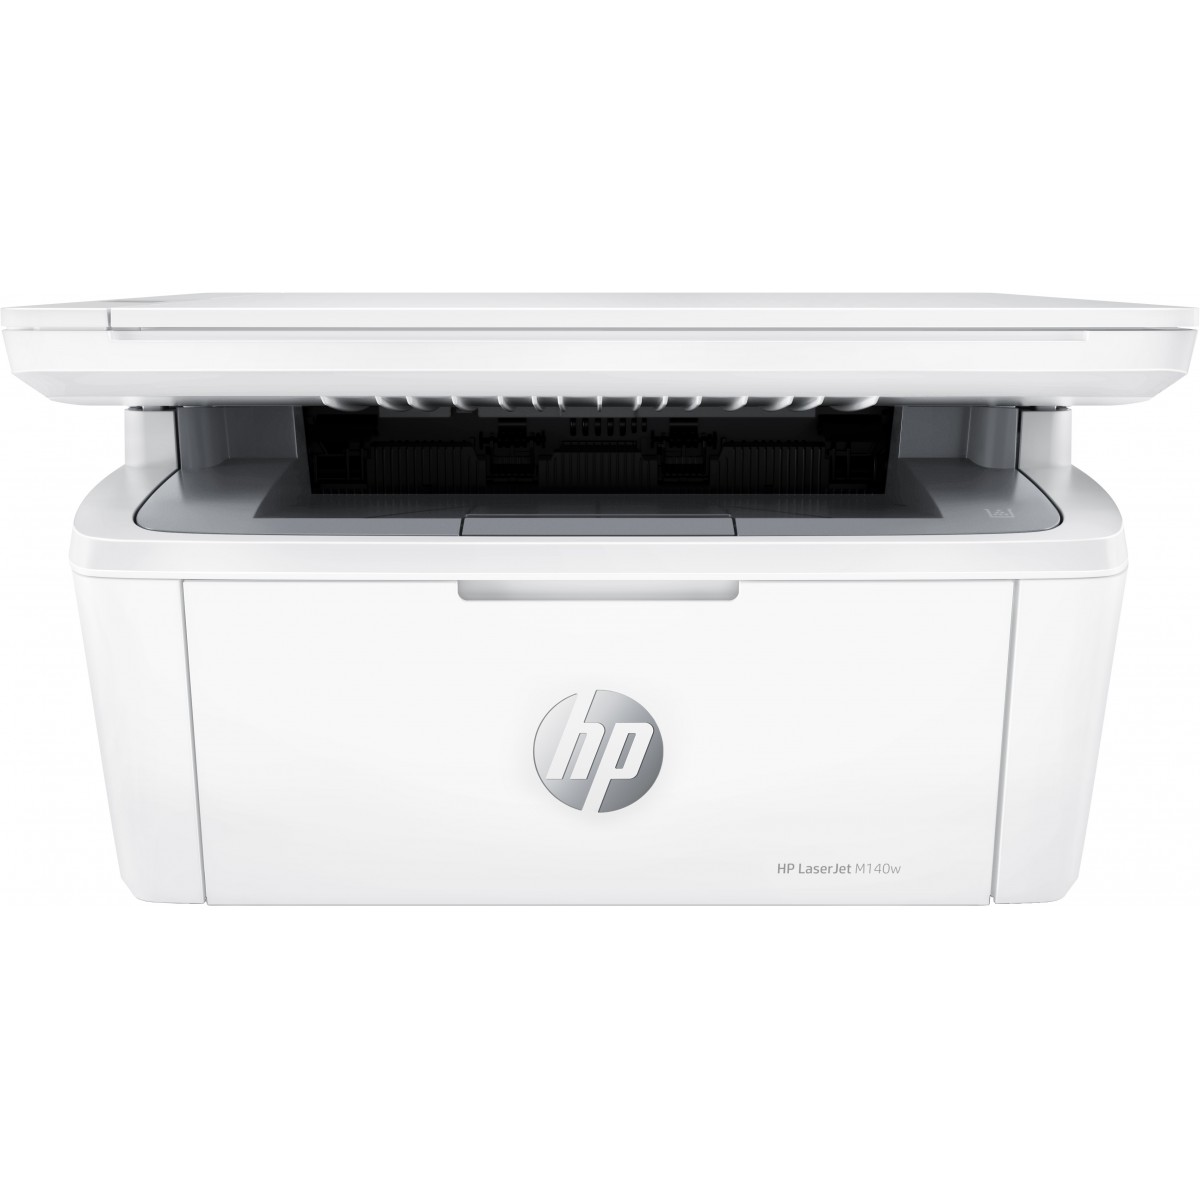 HP LaserJet MFP M140 w Print Copy Scan 21ppm Printer